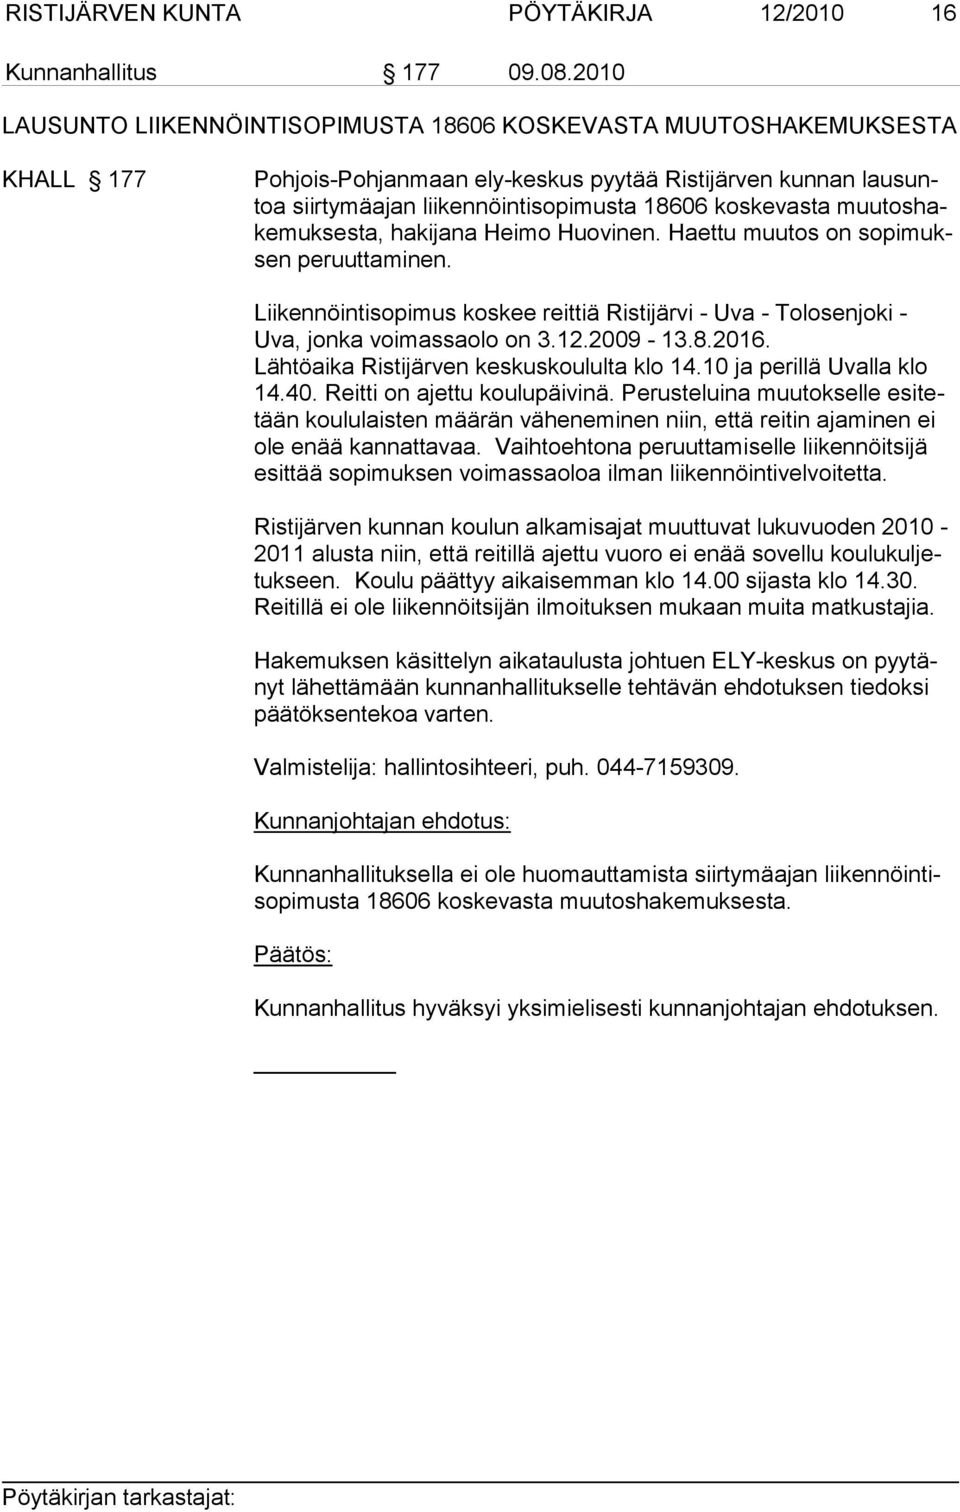 muutoshakemuksesta, hakijana Heimo Huovinen. Haettu muutos on sopimuksen peruuttaminen. Liikennöintisopimus koskee reittiä Ristijärvi - Uva - Tolosenjoki - Uva, jon ka voimassaolo on 3.12.2009-13.8.